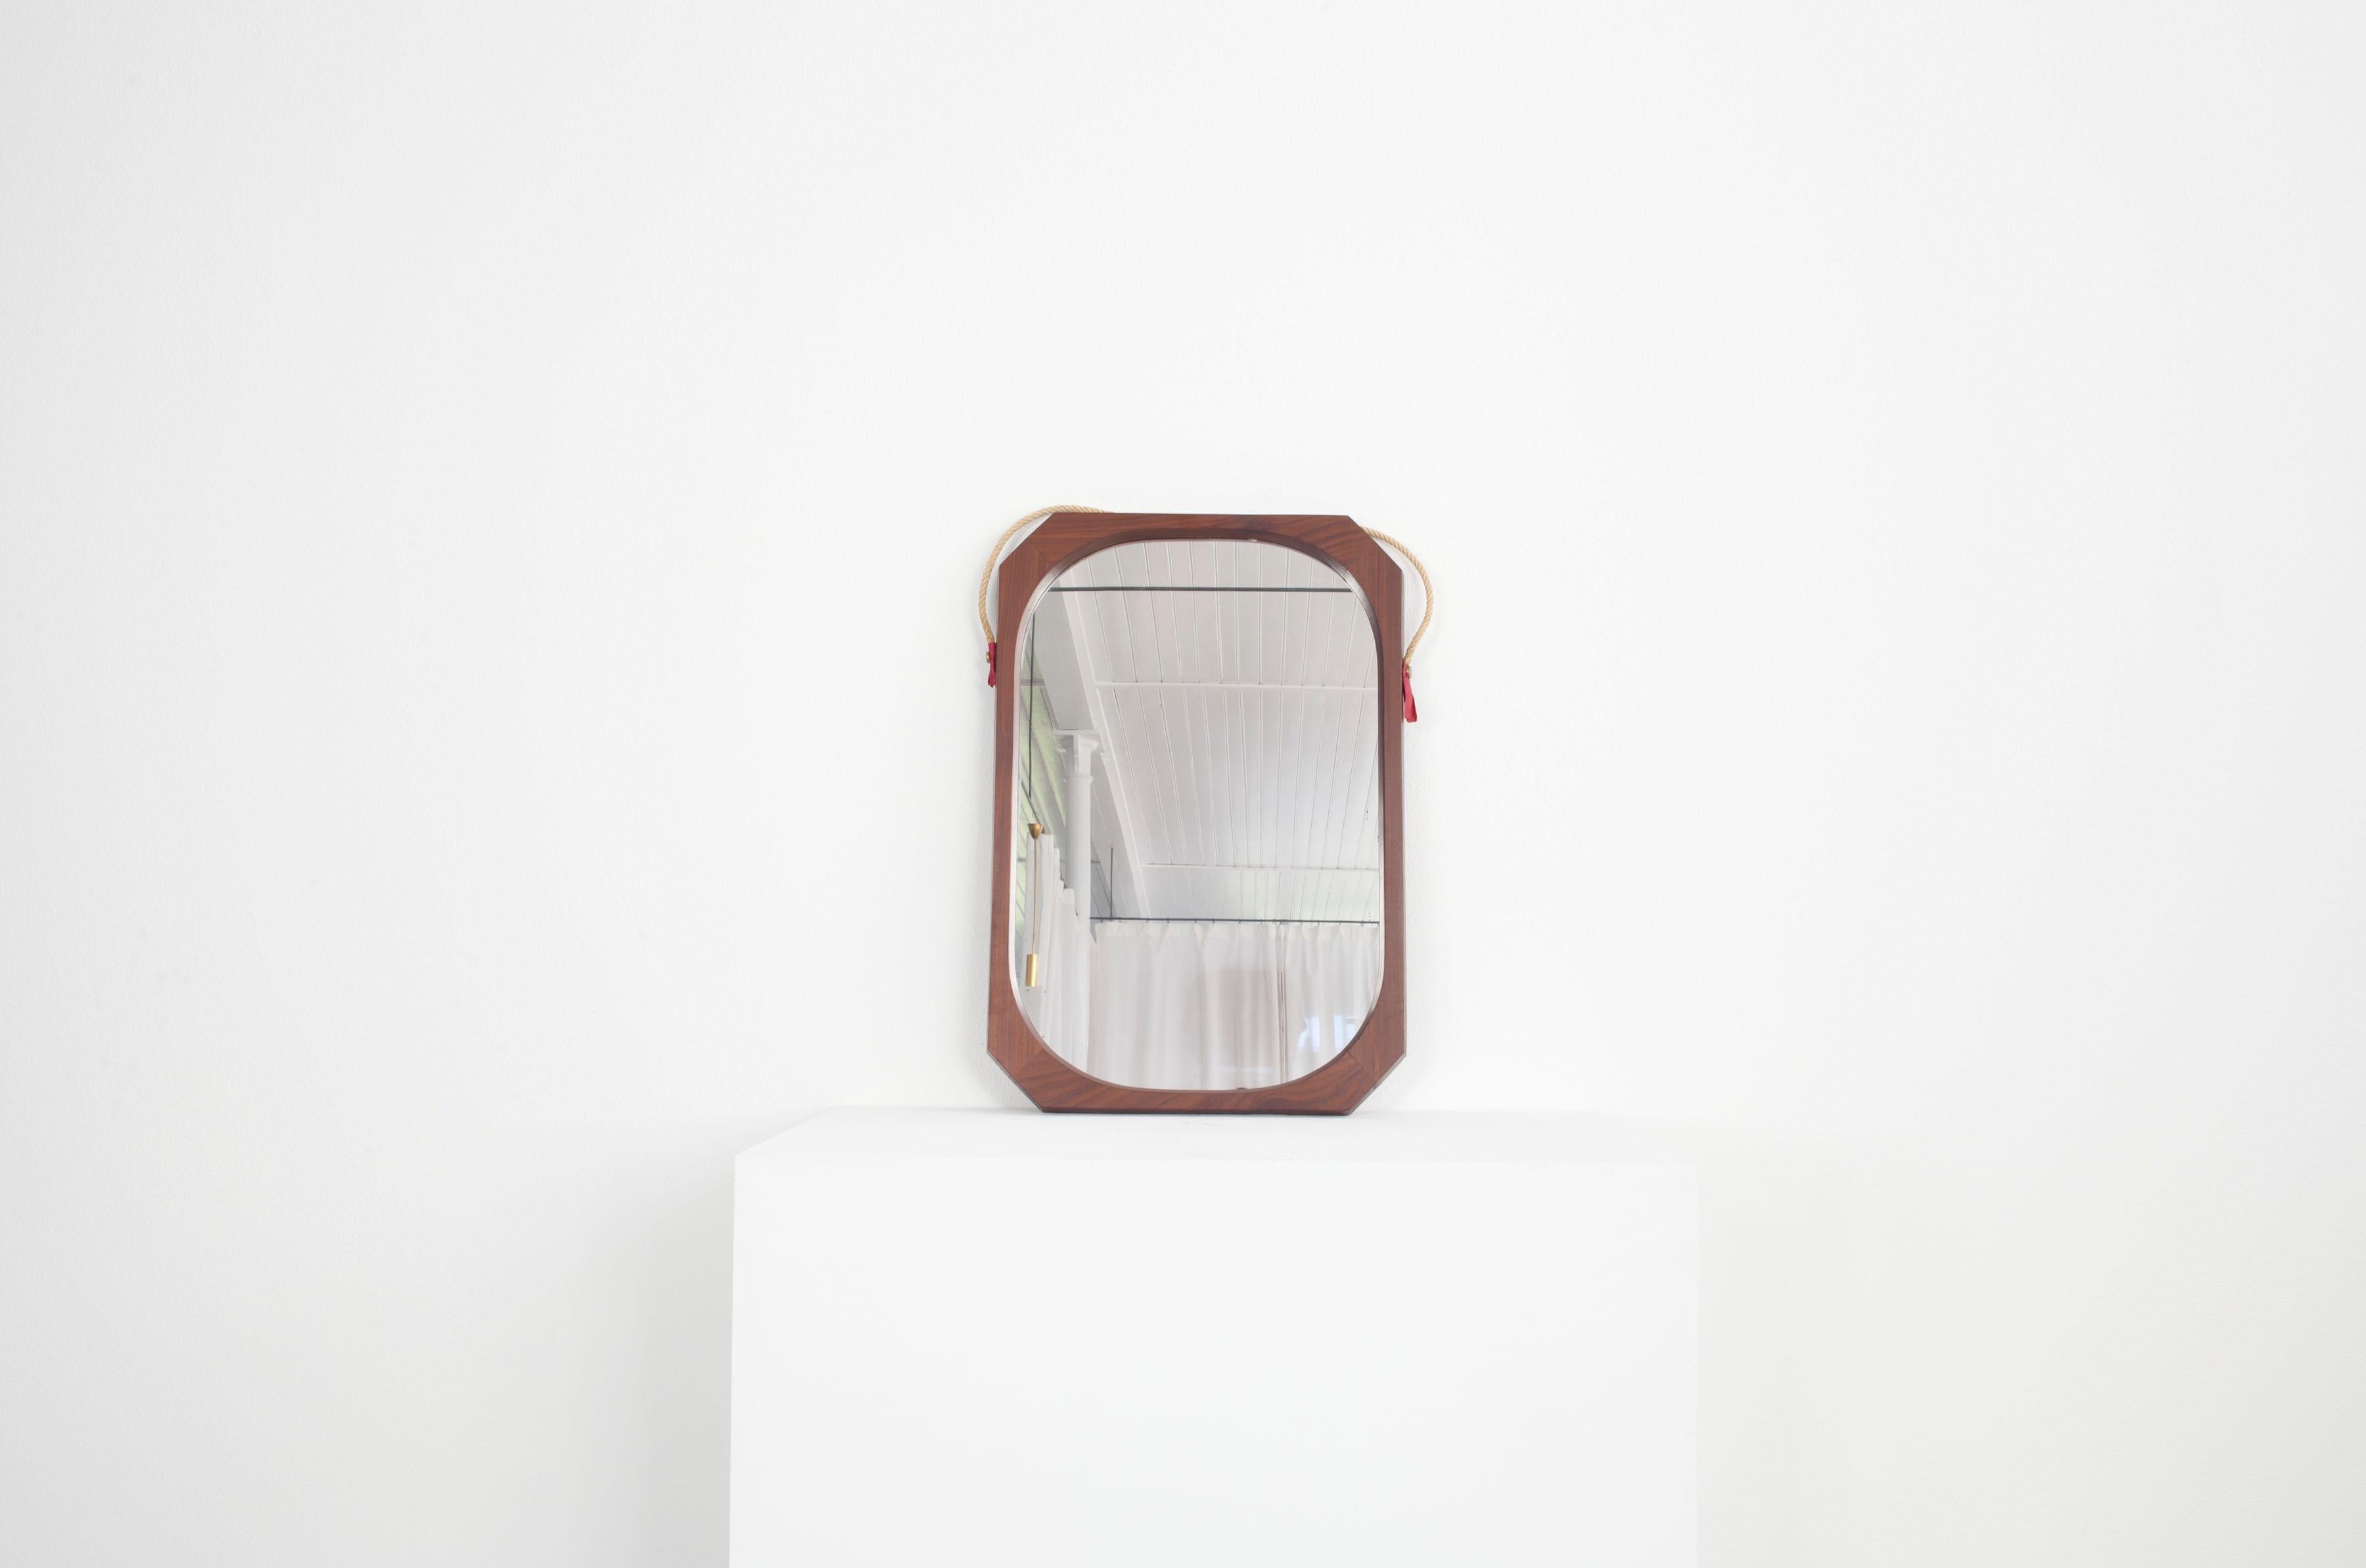 Ce miroir italien date des années 60. Le cadre en bois a une forme particulière : alors que les bords extérieurs sont anguleux, le cadre est rond à l'intérieur. Le miroir est également muni d'une corde qui permet de l'attacher à un mur. La corde est